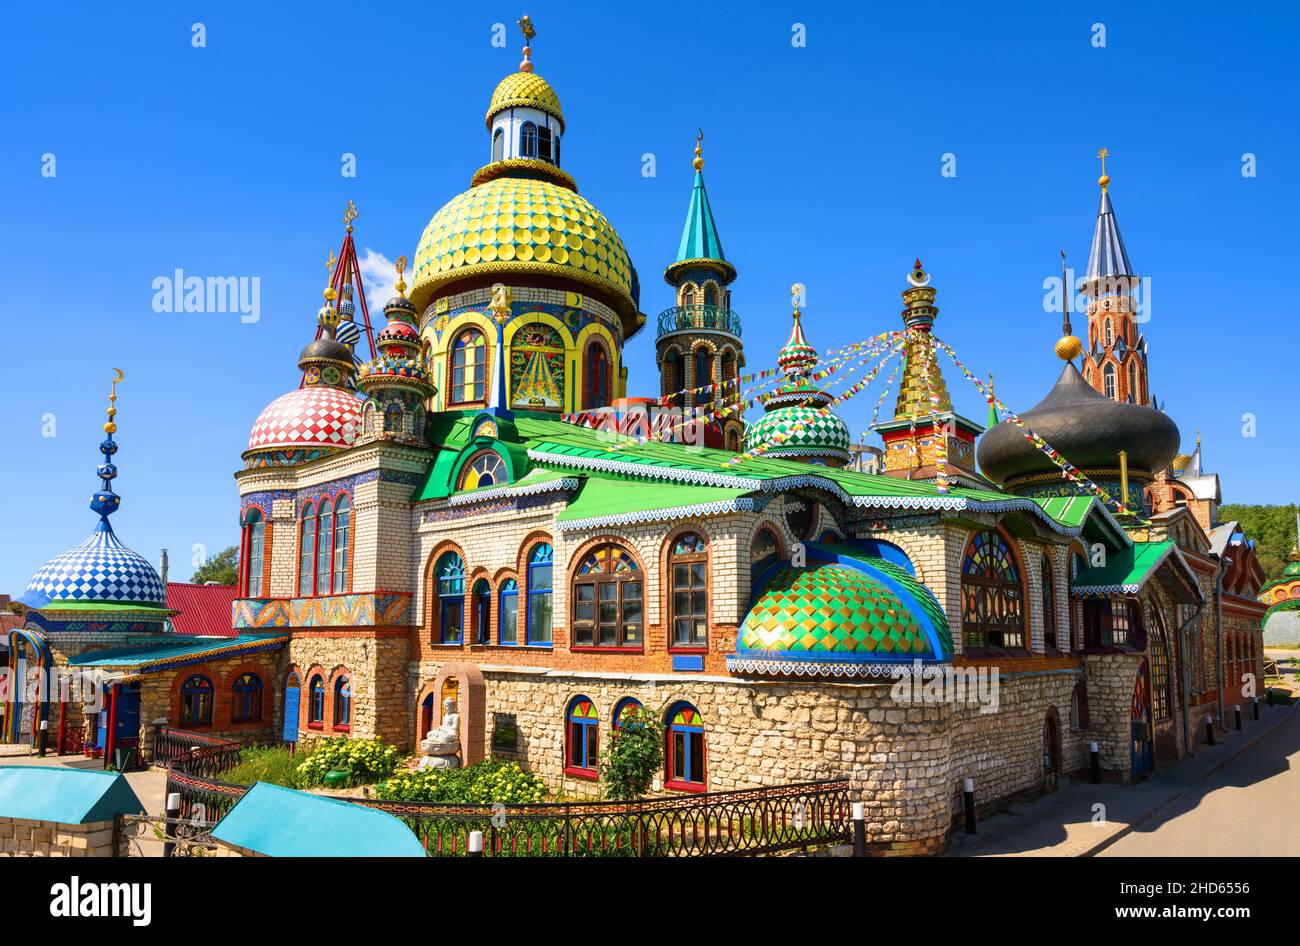 Tempel aller Religionen (Universeller Tempel) in Kasan, Tatarstan, Russland. Dieser Ort ist das Wahrzeichen von Kazan. Schöne bunte Komplex von Kirchen, Moschee Stockfoto